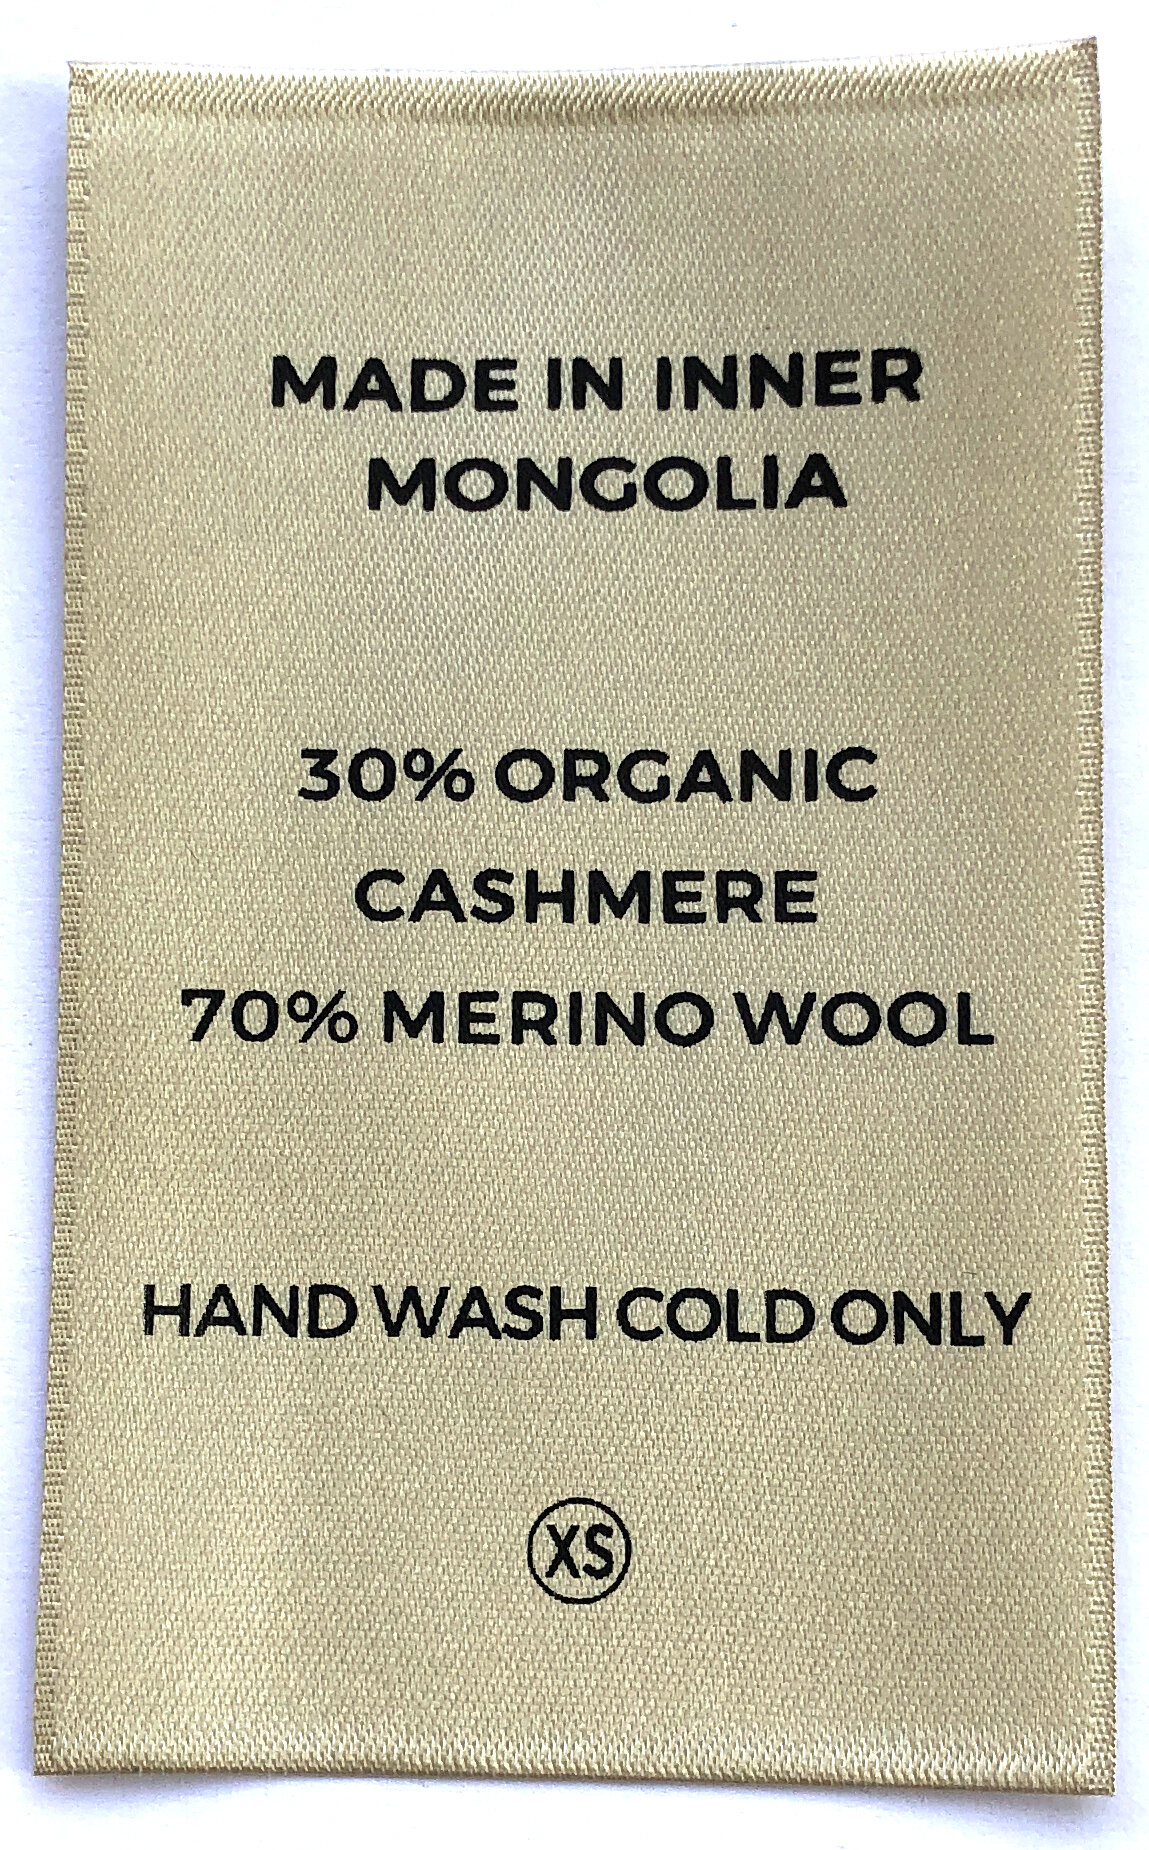 cahsmere coats labels (6).JPG